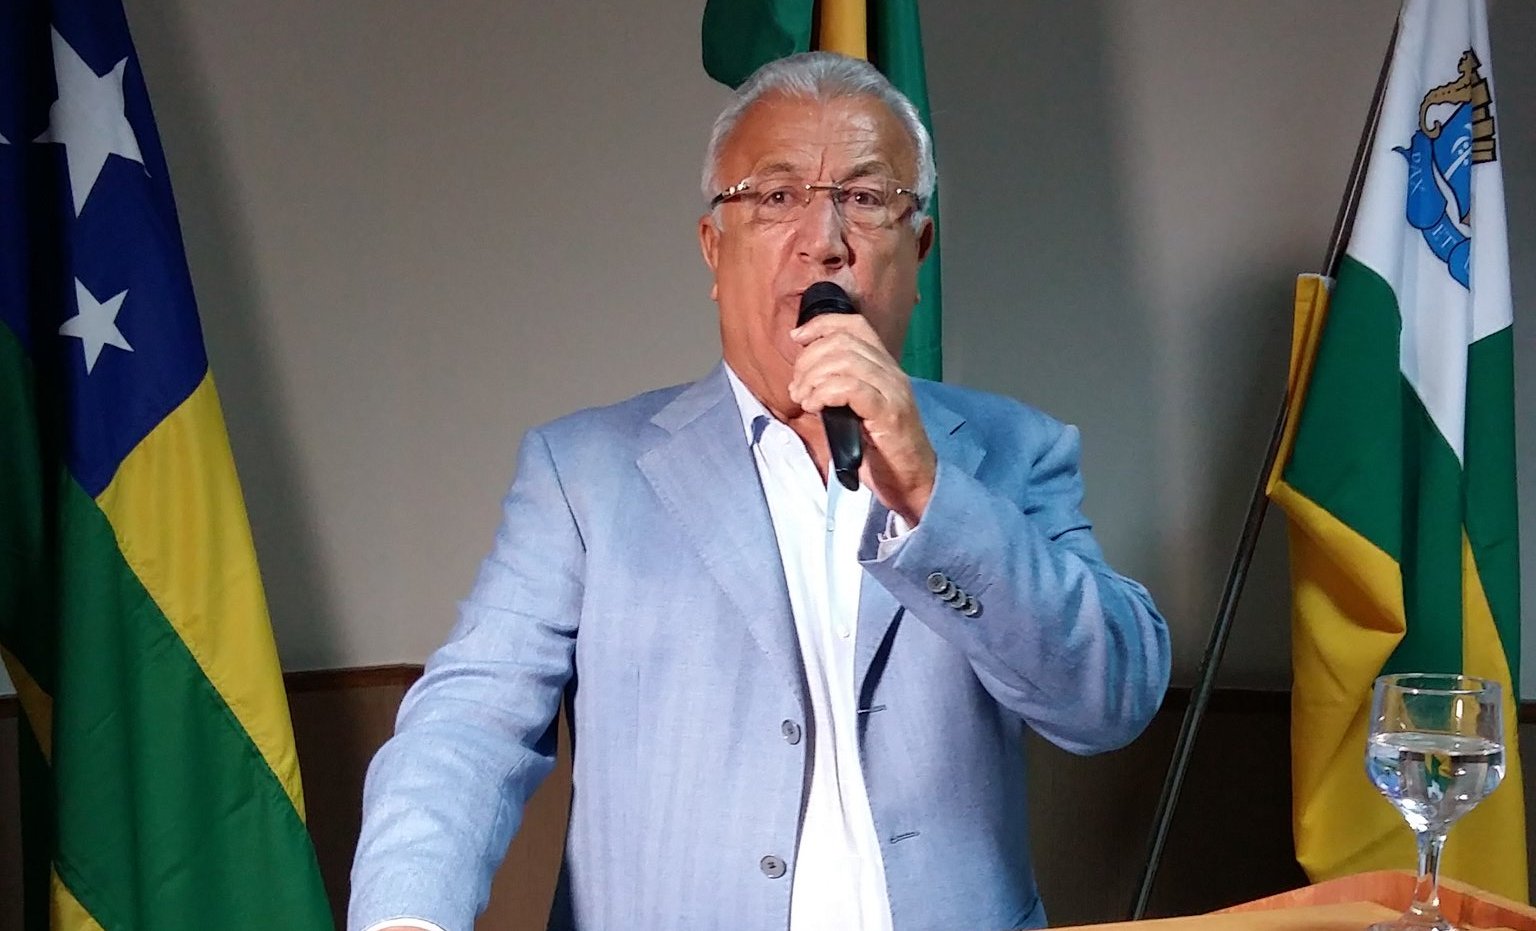 Turismo: Sergipe investiu mais de R$ 50 milhões em obras, diz Jackson